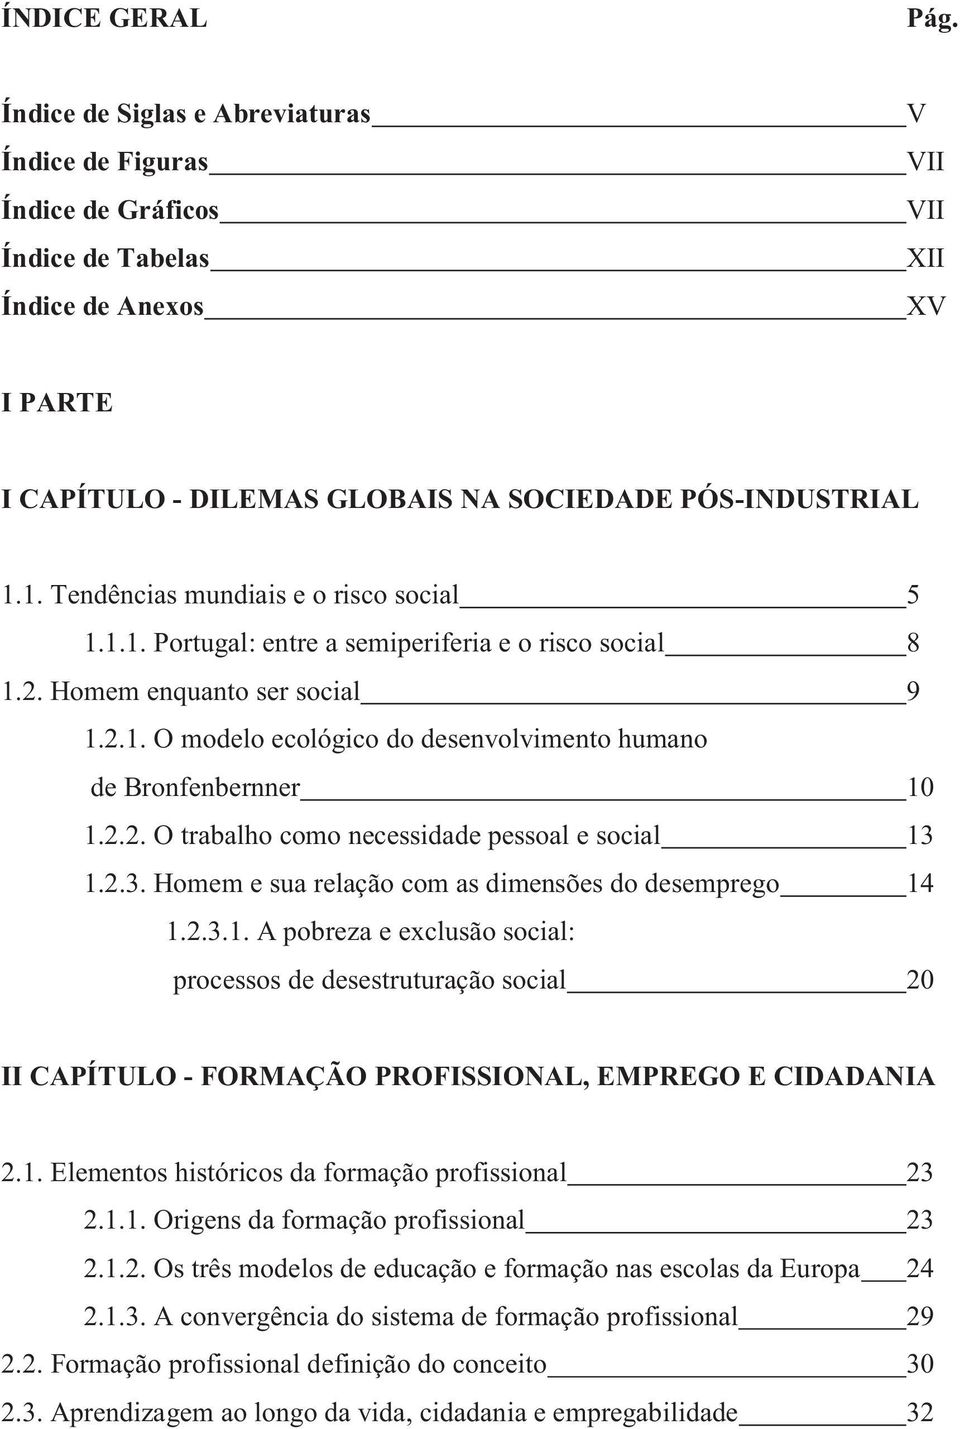 1. Tendências mundiais e o risco social 5 1.1.1. Portugal: entre a semiperiferia e o risco social 8 1.2. Homem enquanto ser social 9 1.2.1. O modelo ecológico do desenvolvimento humano de Bronfenbernner 10 1.